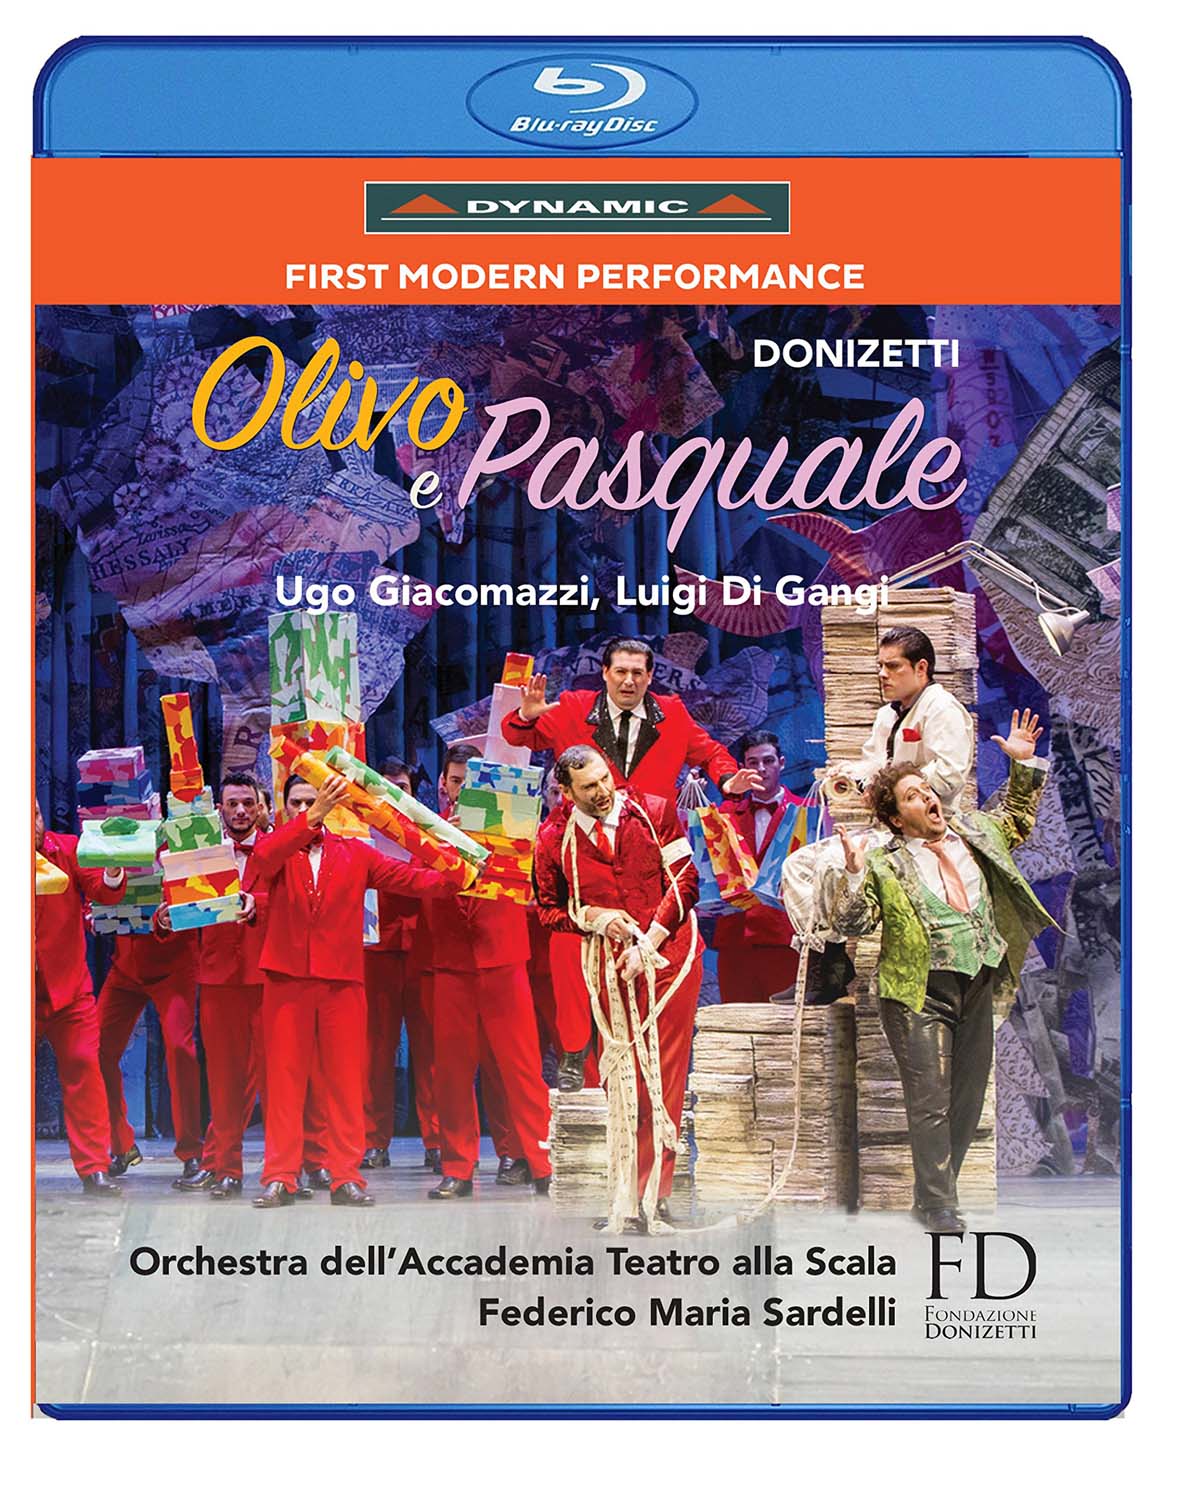 Music Blu-Ray Gaetano Donizetti - Olivo E Pasquale NUOVO SIGILLATO, EDIZIONE DEL 30/03/2017 SUBITO DISPONIBILE